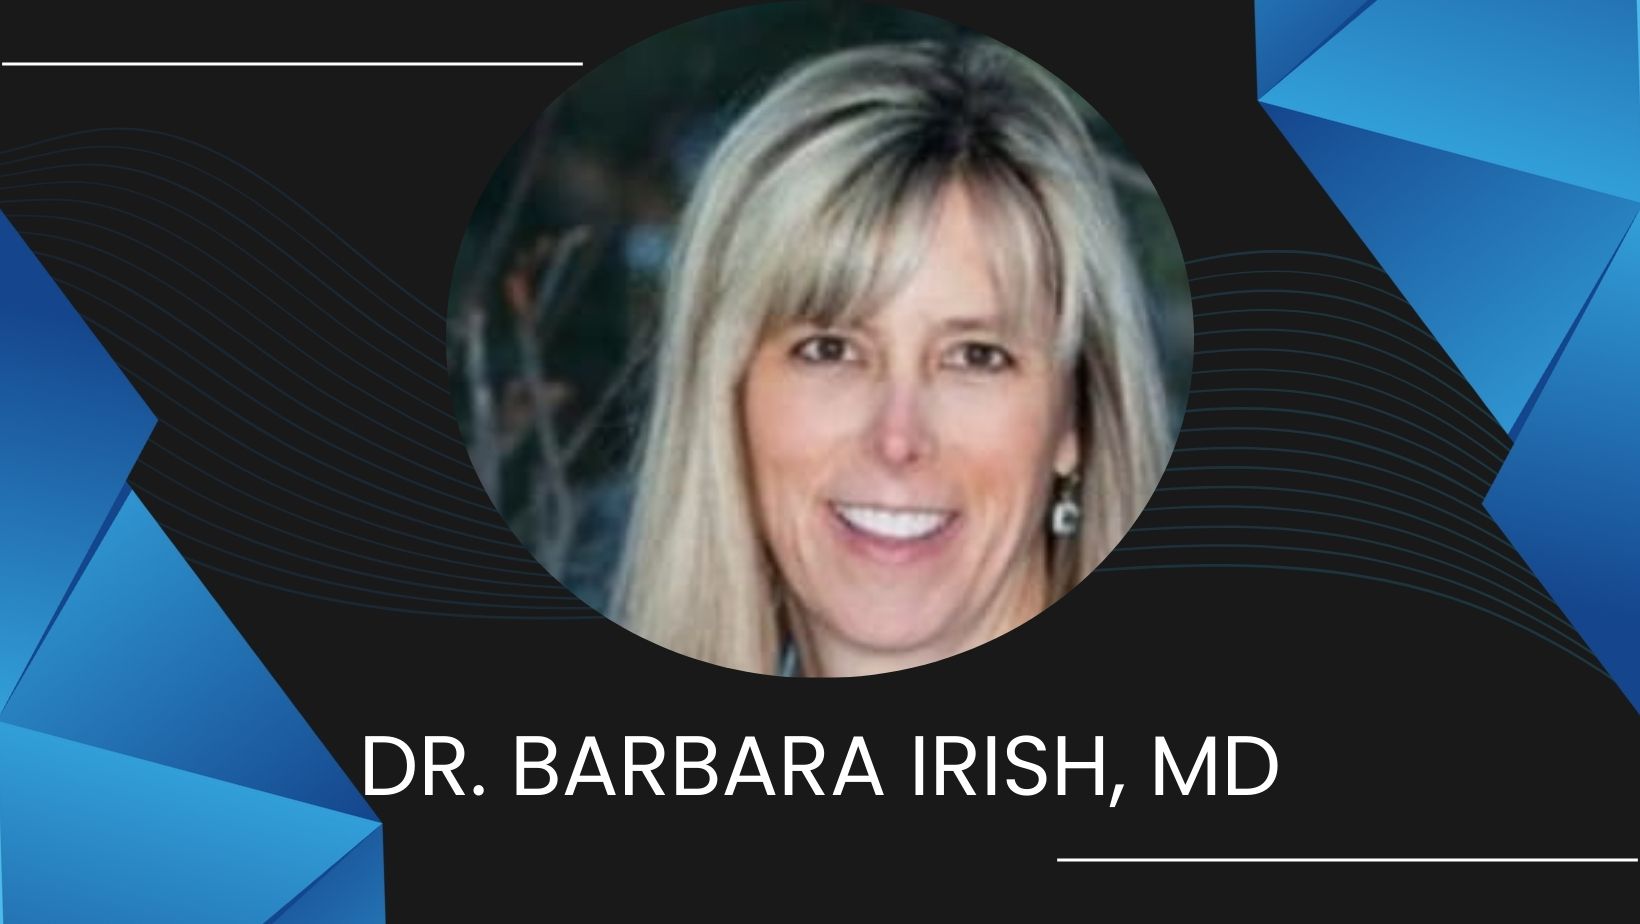 Dr. Barbara Irish, MD